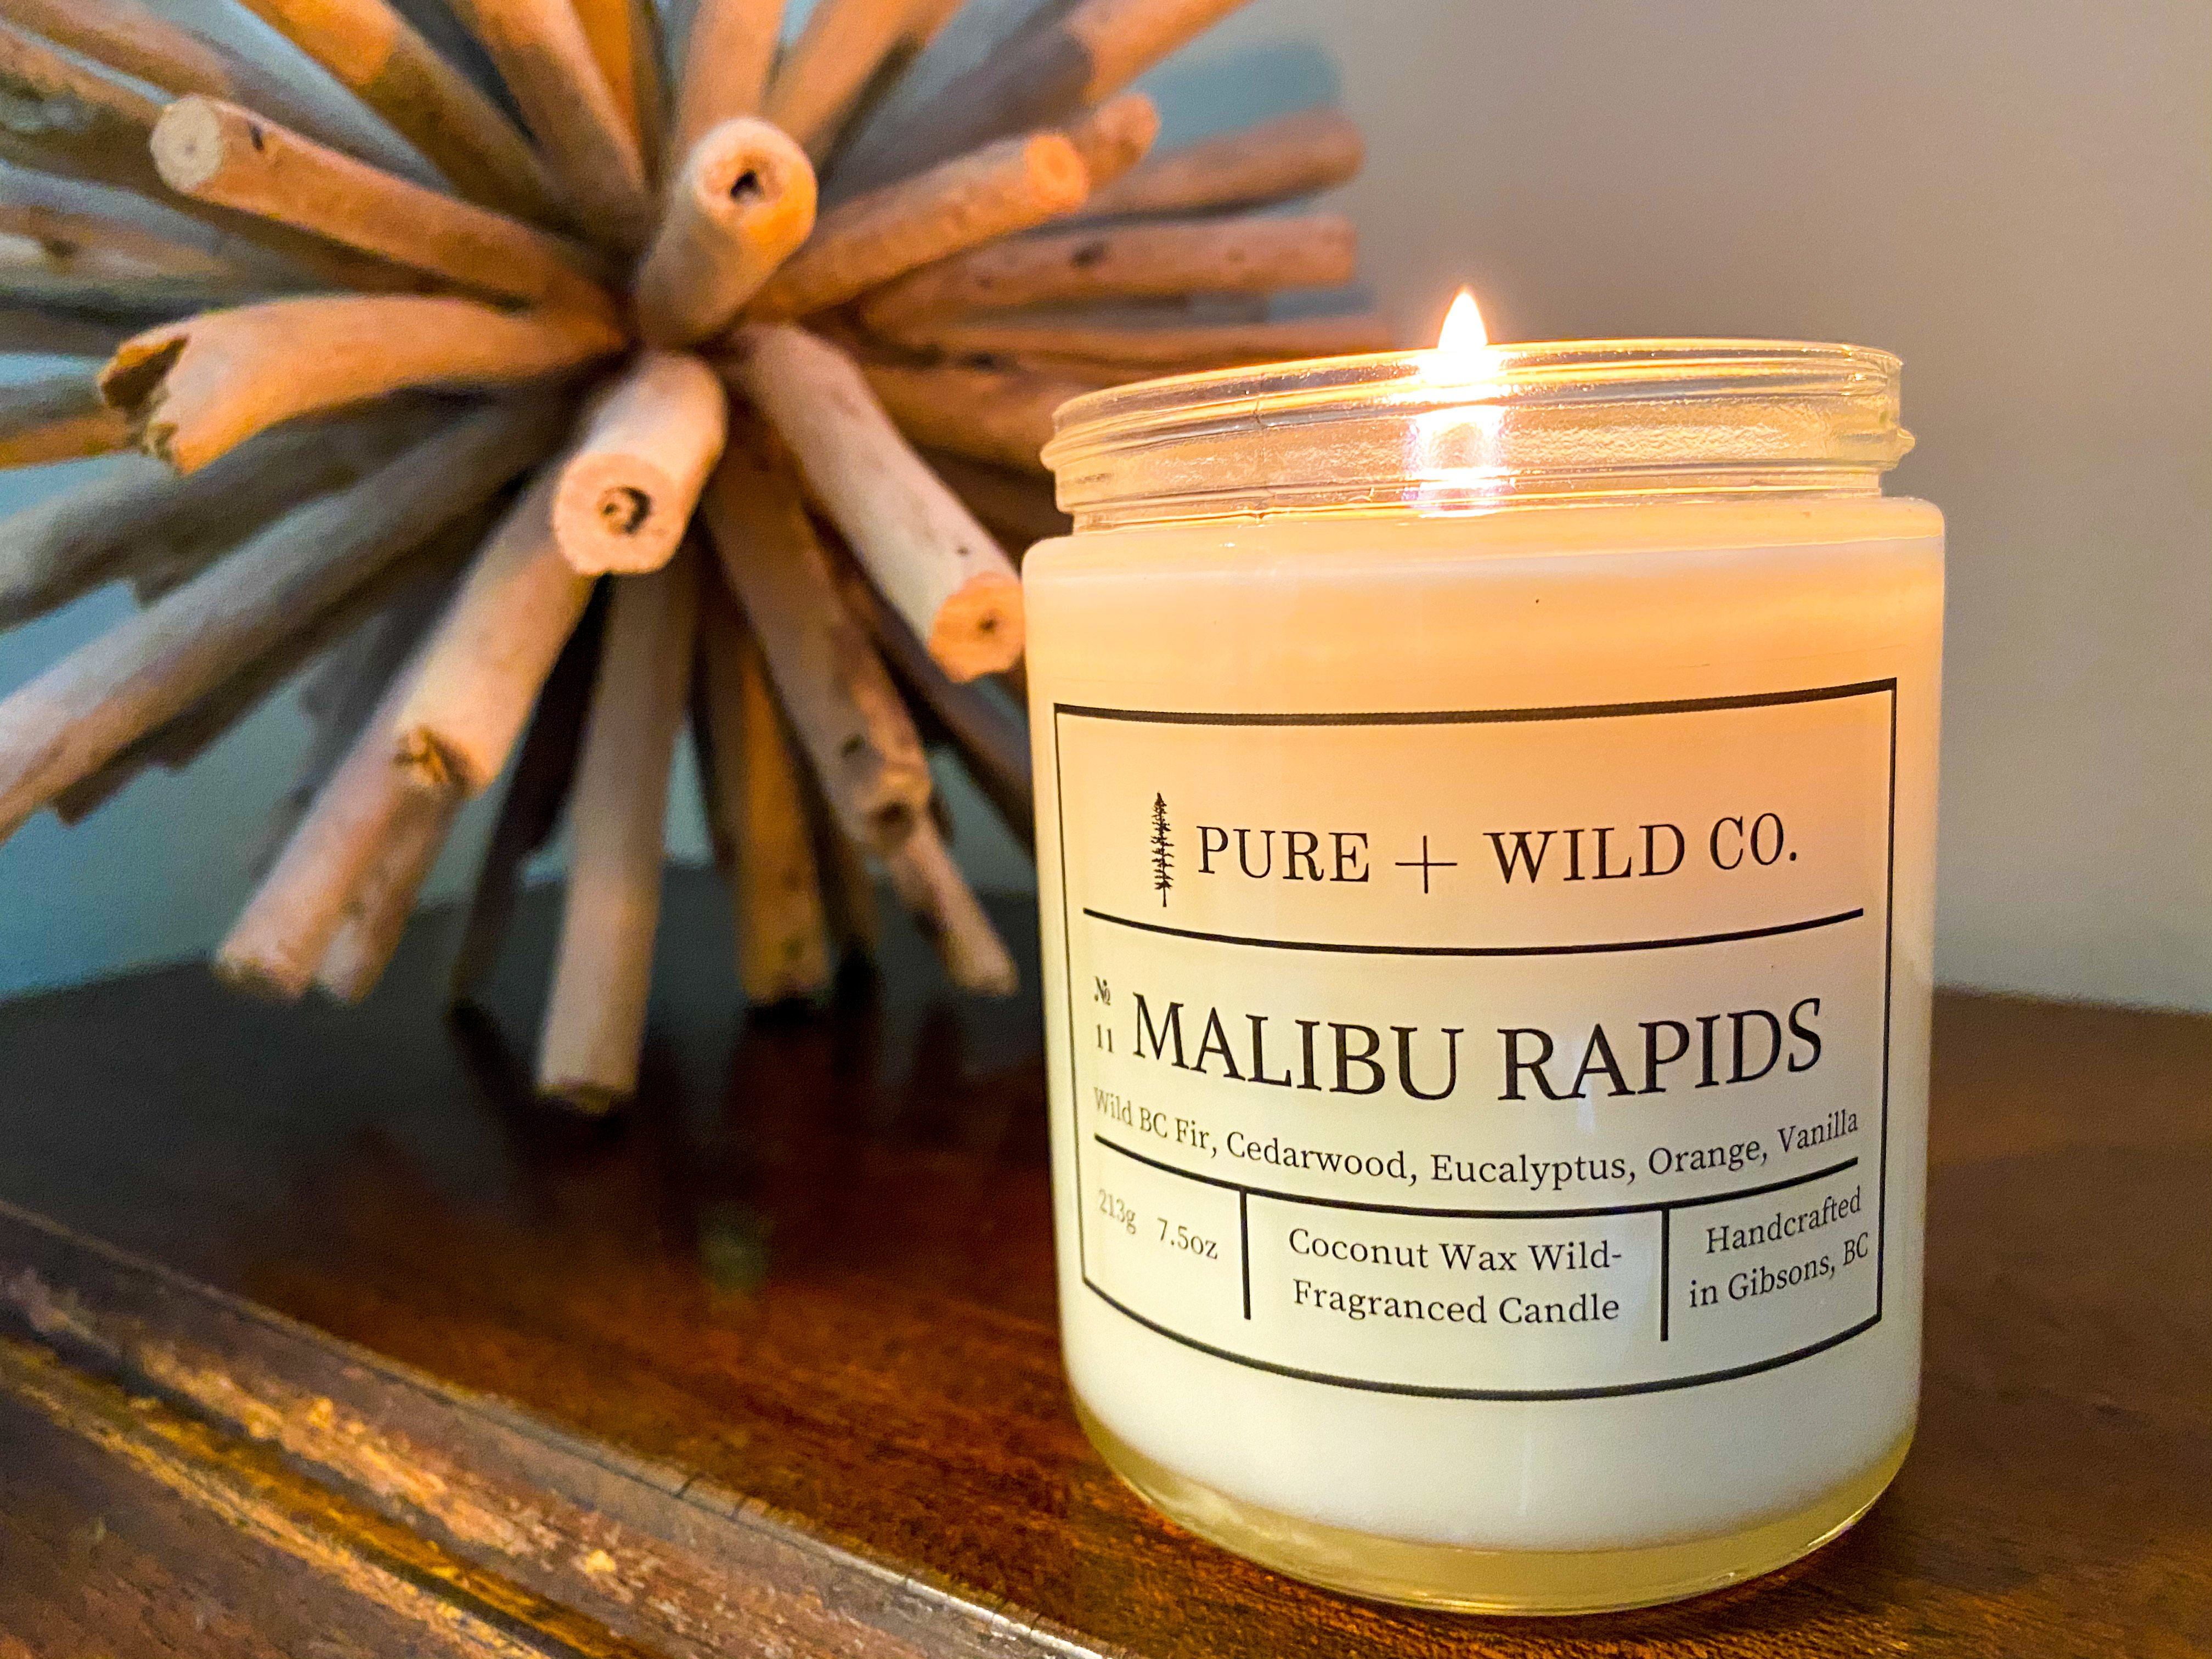 № 11 MALIBU RAPIDS - Fir, Cedarwood, Eucalyptus, Orange, Vanilla PURE + WILD CO. 